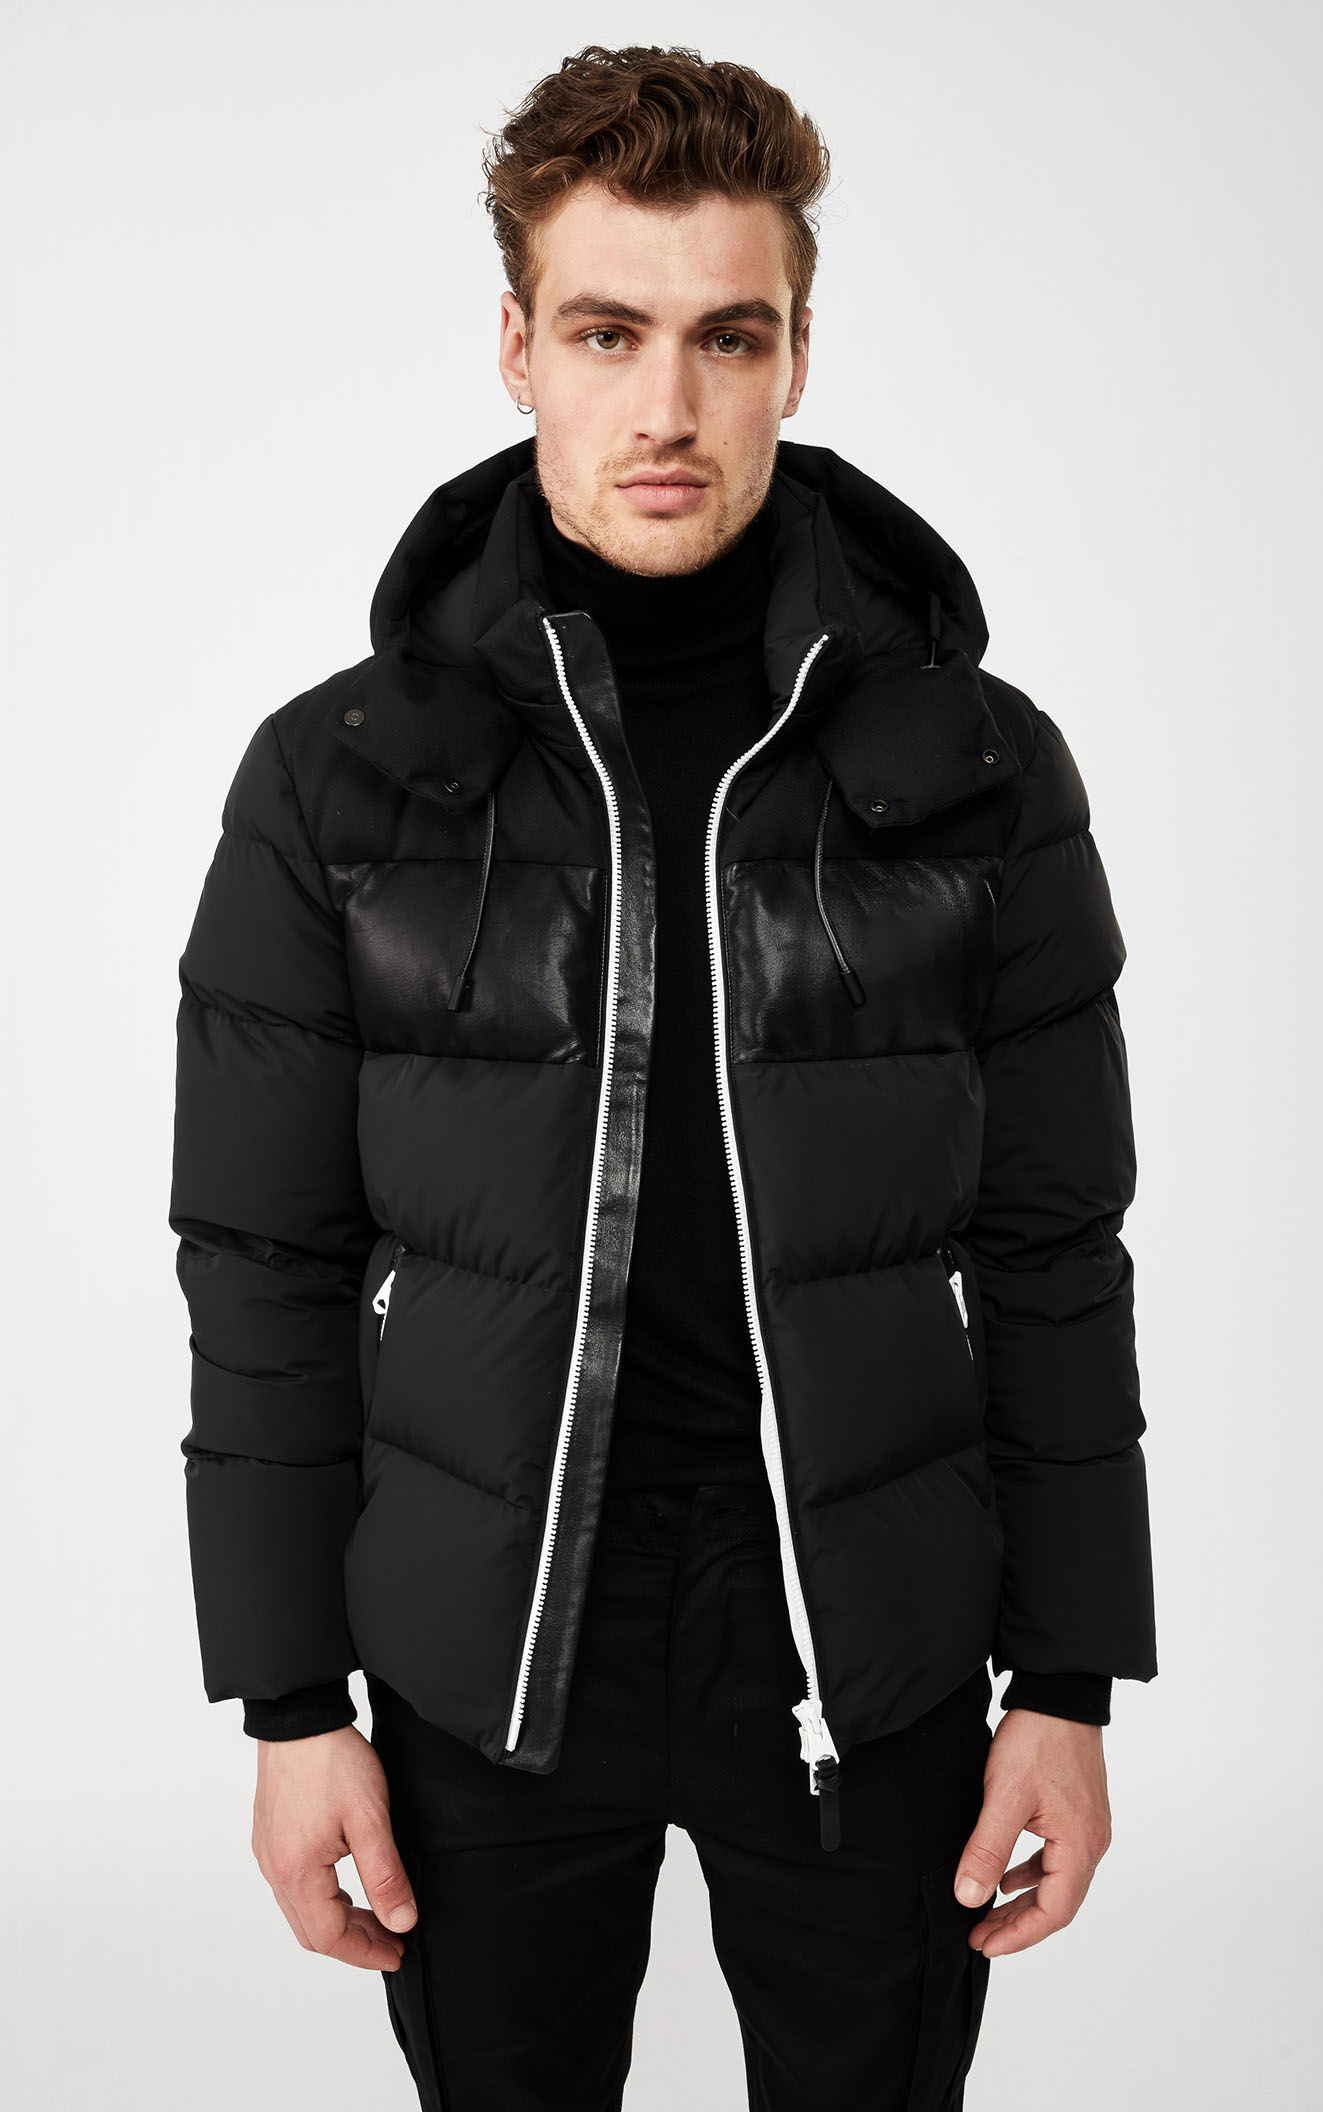 Men's Long sleeve winter down jacket FO20-0135 - Puffer Jacket - Custom ...